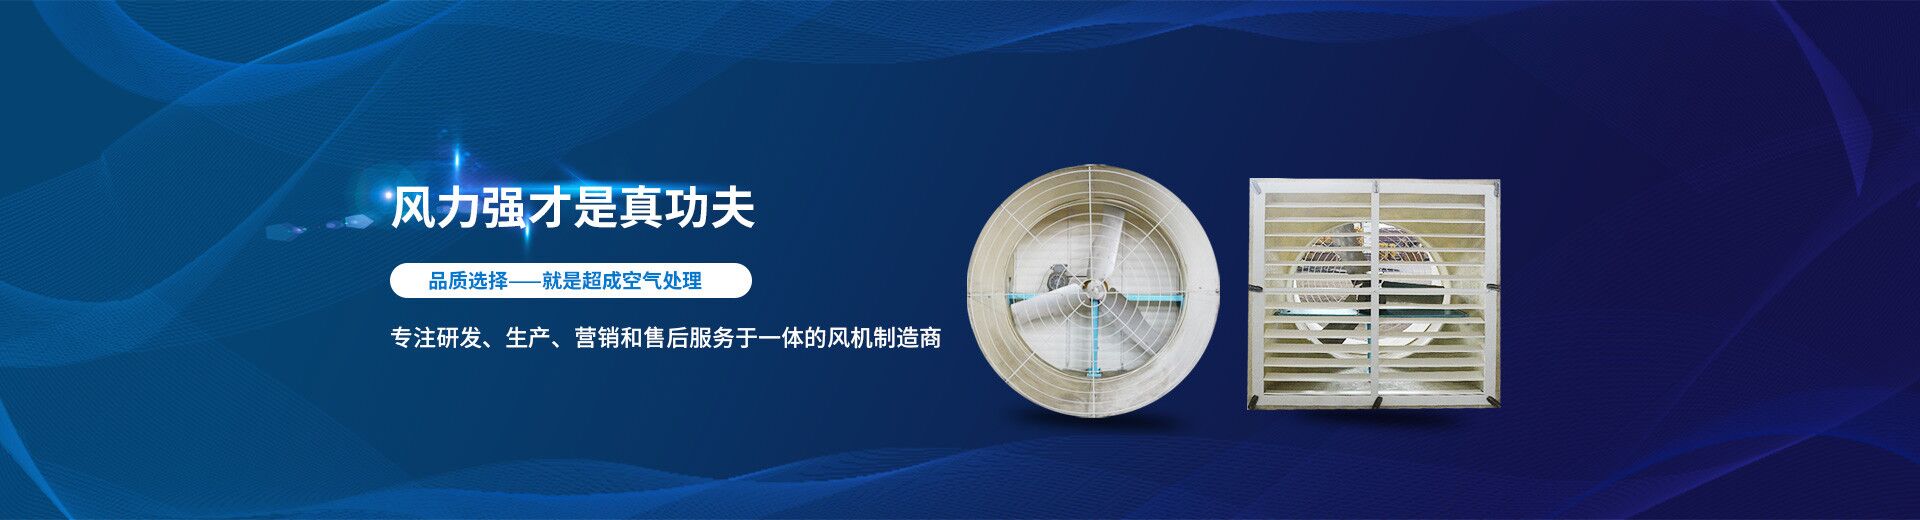 江阴市超成空气处理设备有限公司